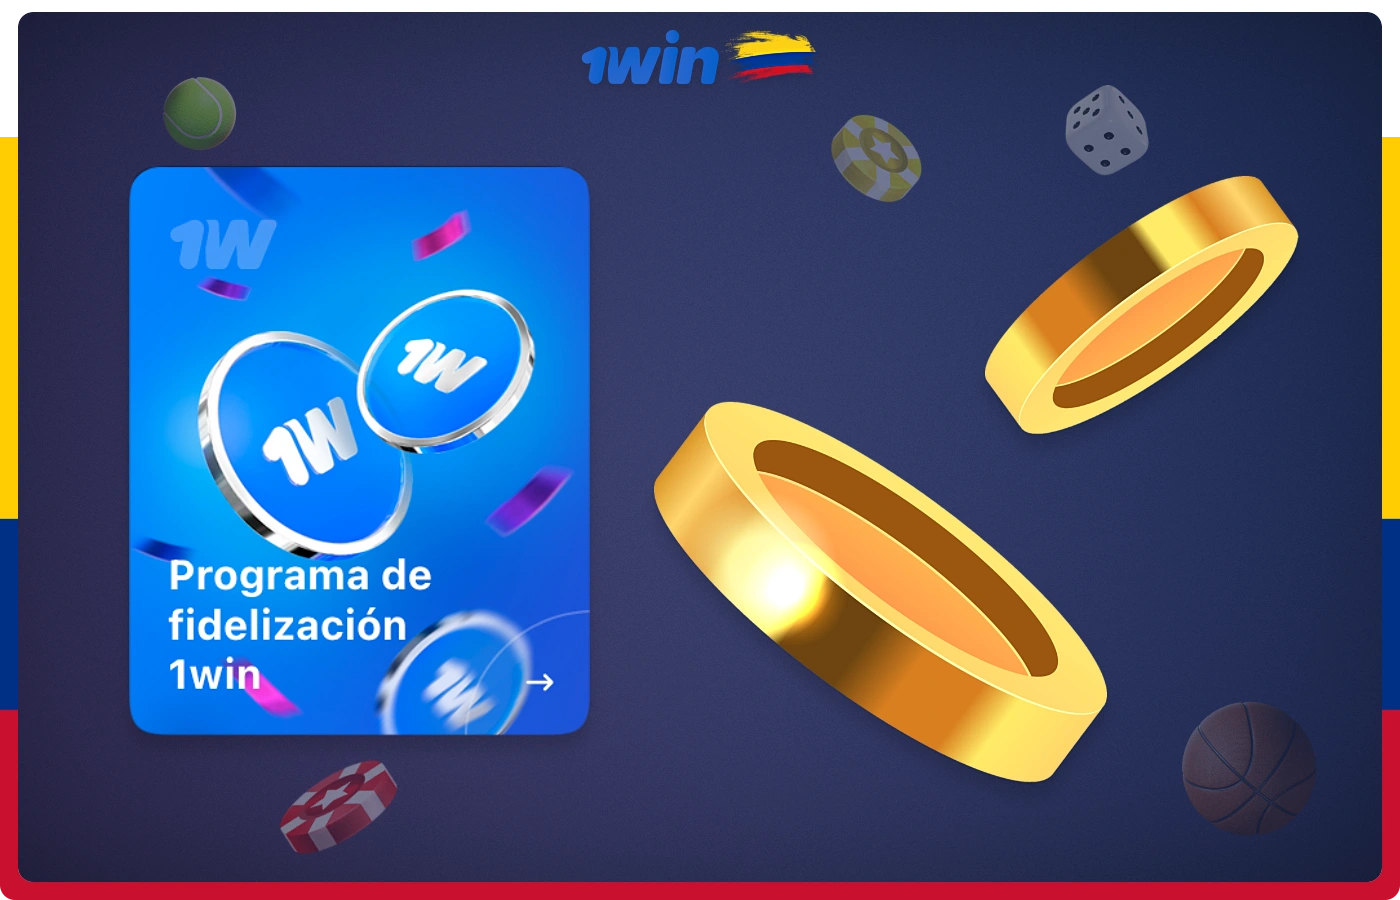 Para recibir bonificaciones adicionales de 1win, los usuarios de Colombia pueden participar en el programa de fidelización